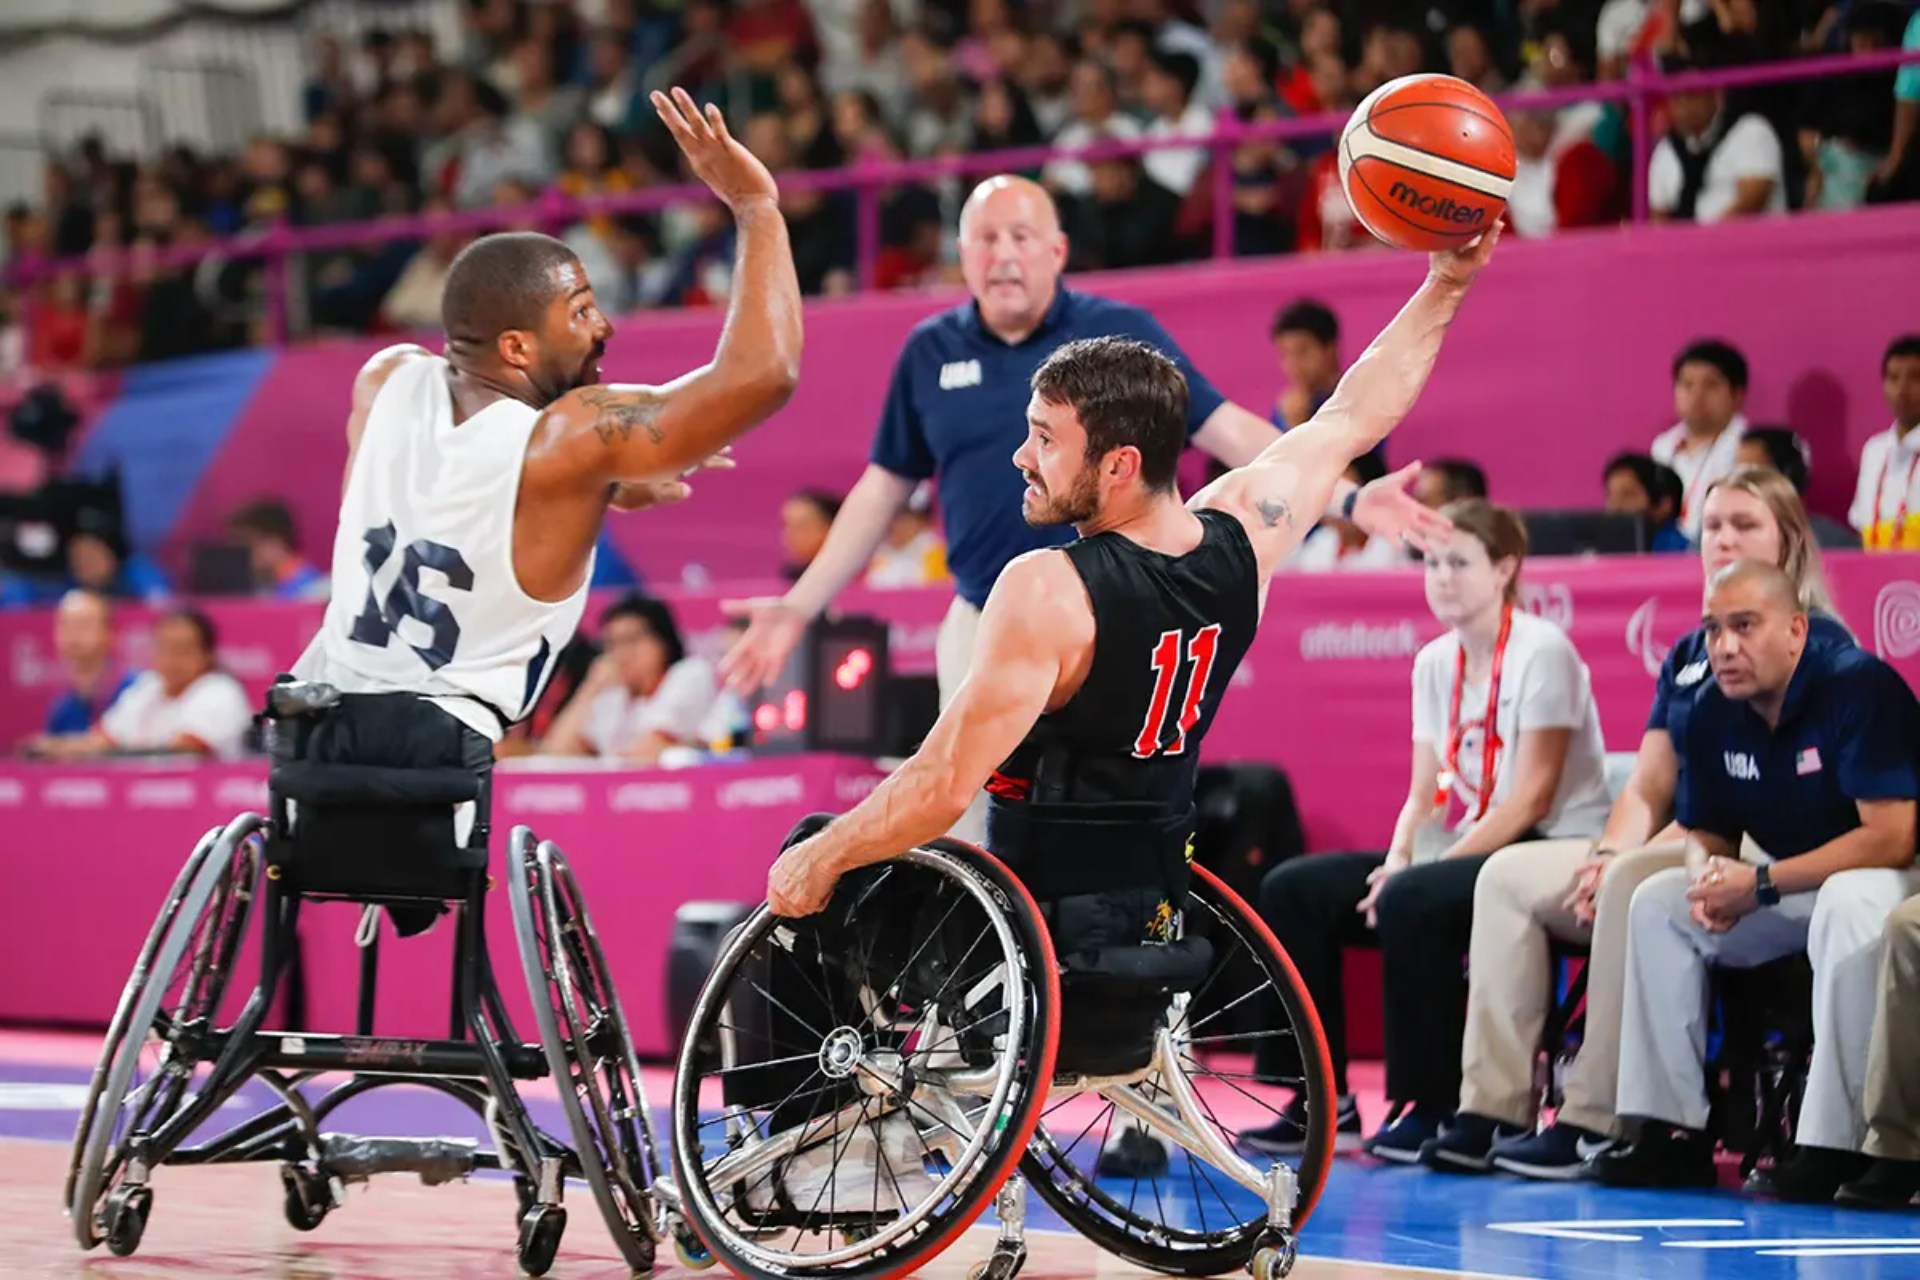 ¡Disfruta con los lanzamientos y giros del baloncesto en silla de ruedas!